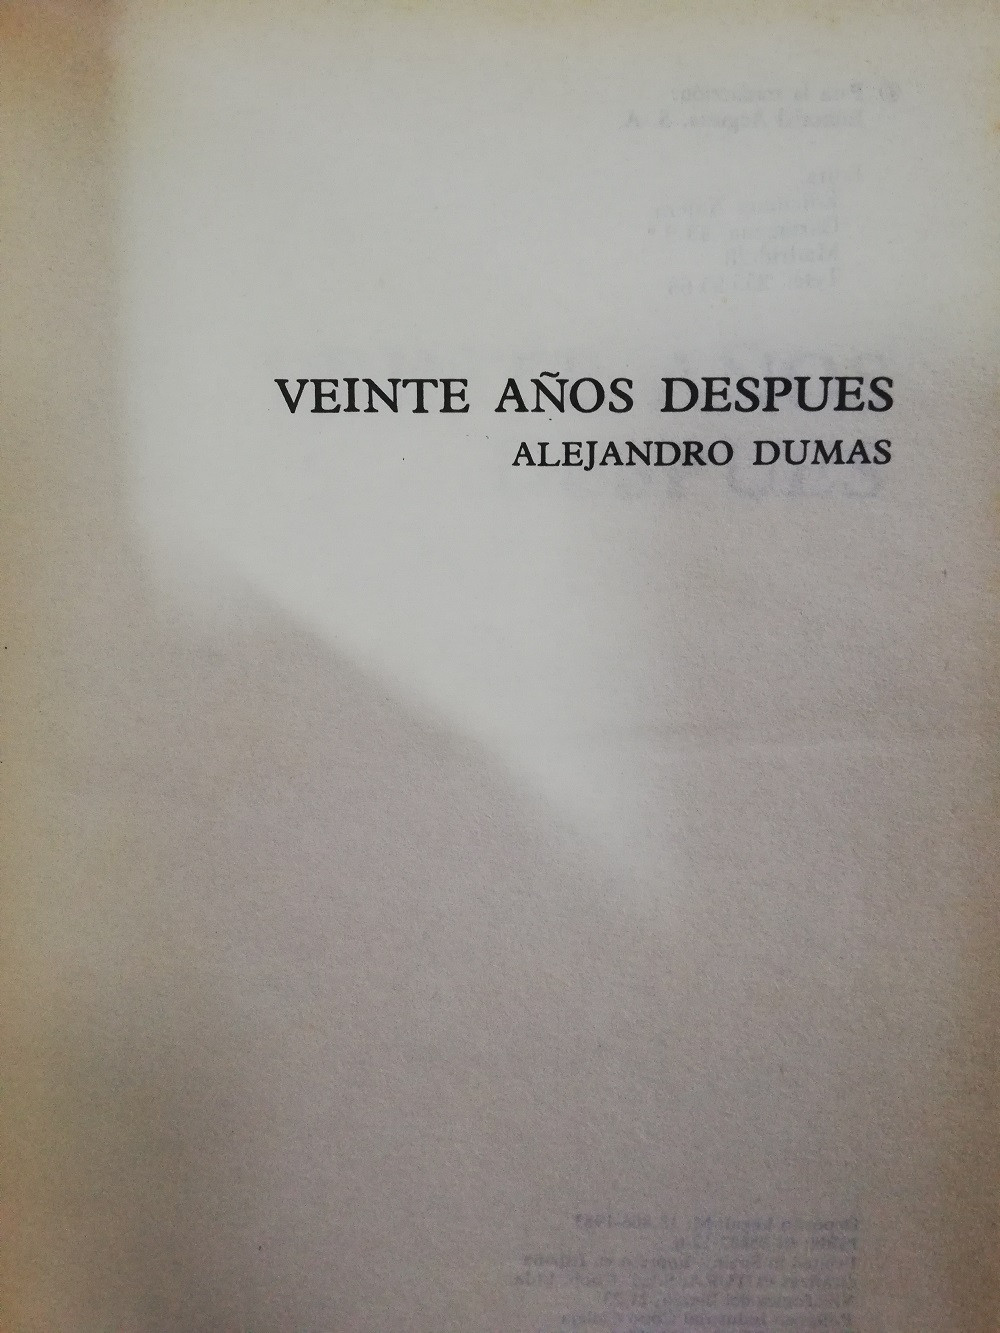 Imagen VEINTE AÑOS DESPUES - ALEJANDRO DUMAS 2